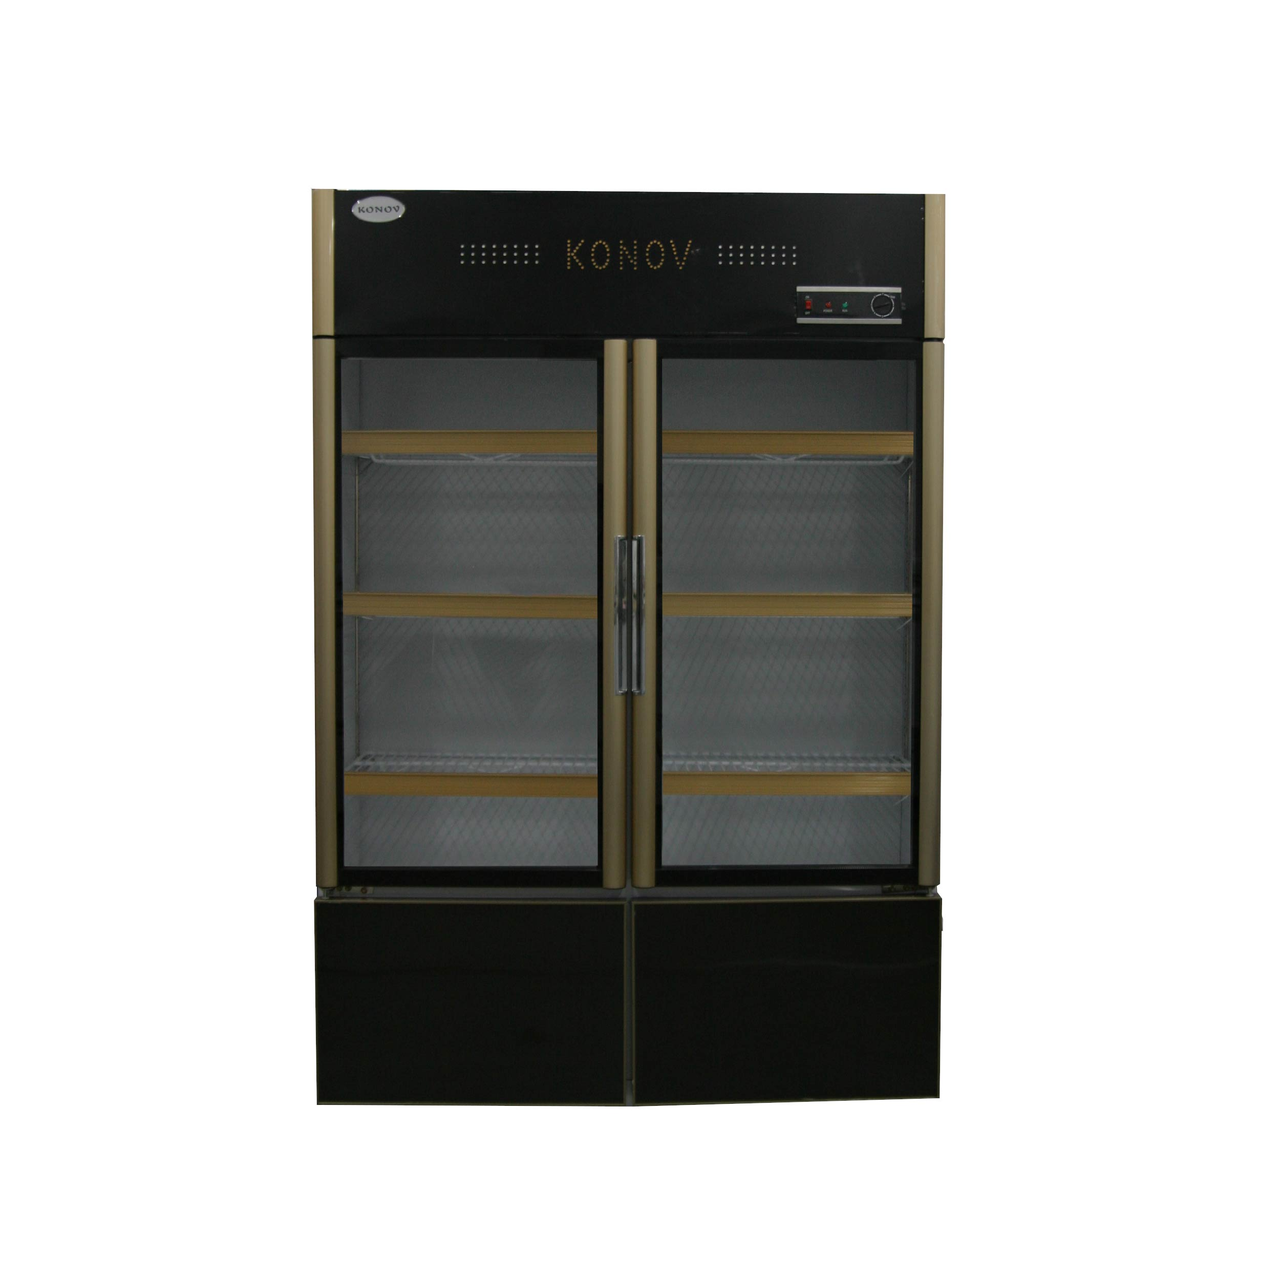 Вертикальный холодильник LCD-868, фото 1